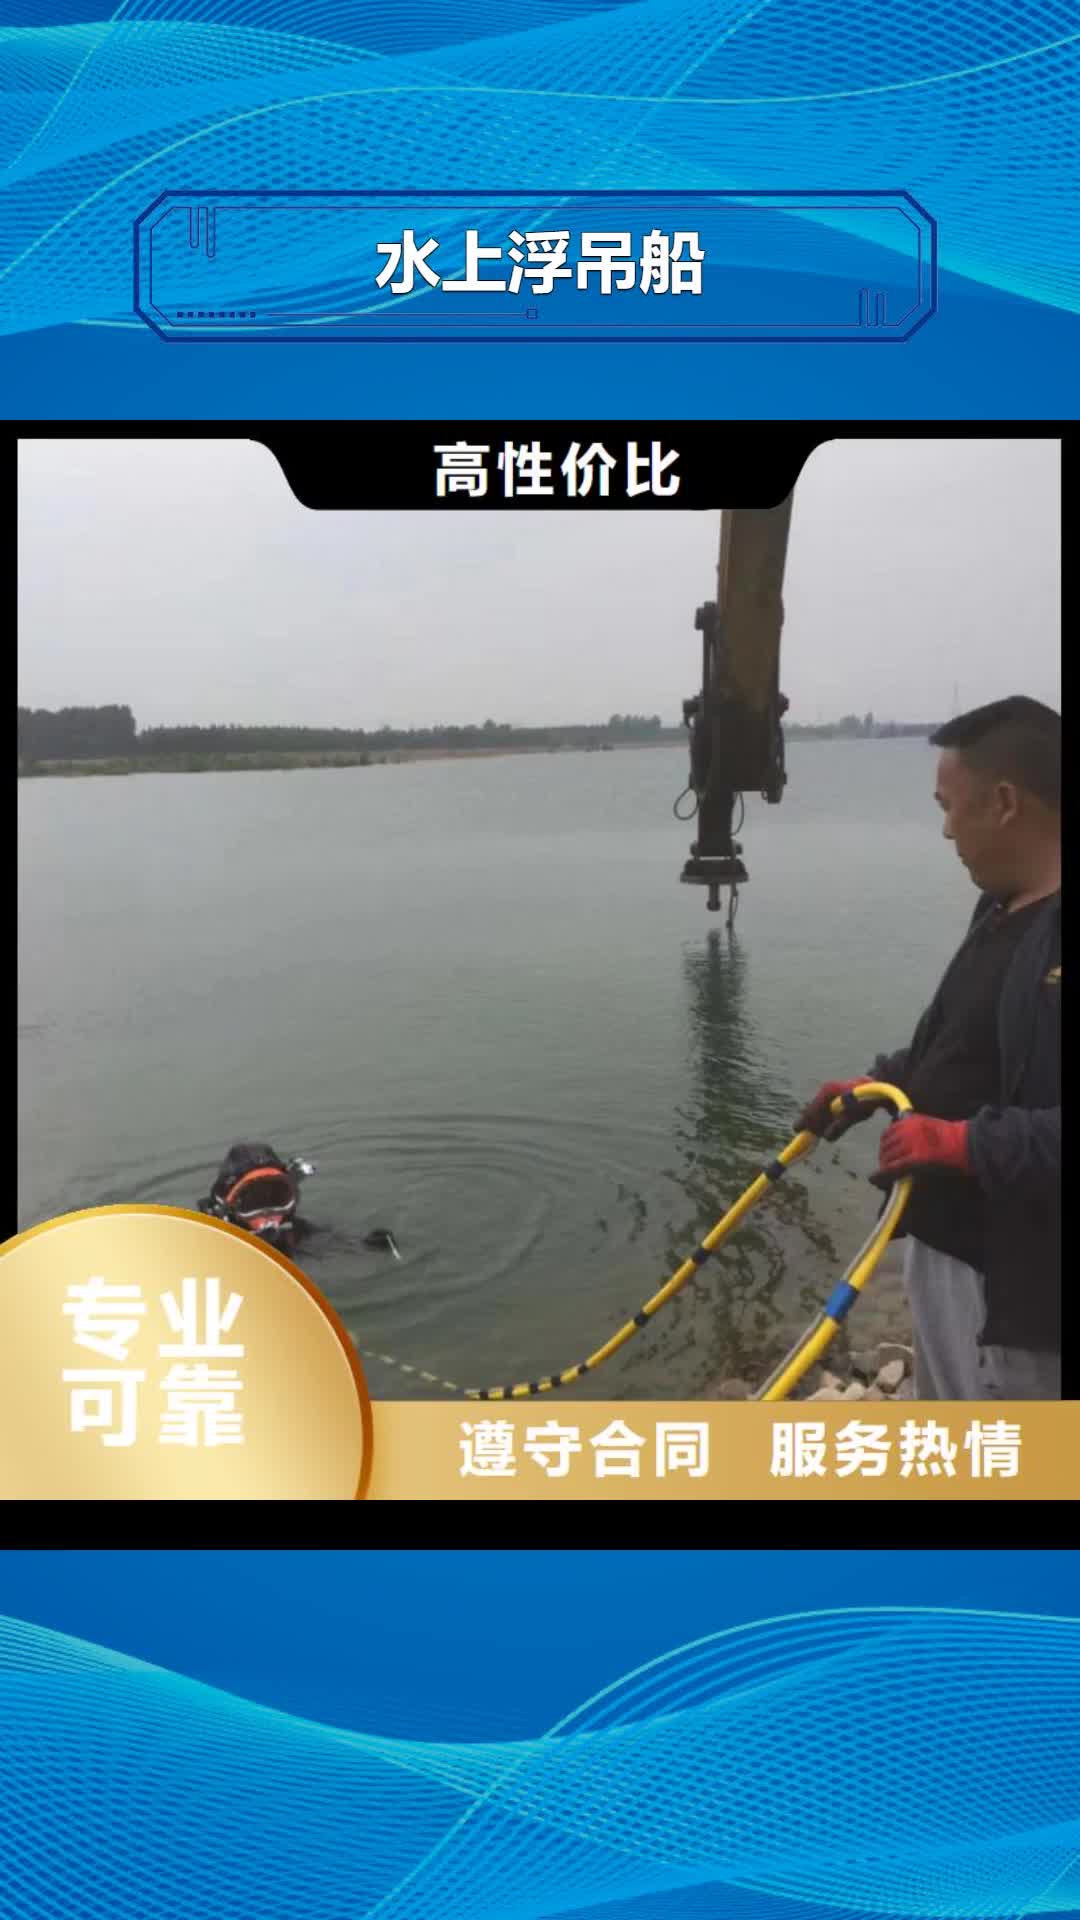 蚌埠【水上浮吊船】,水下设施建设知名公司